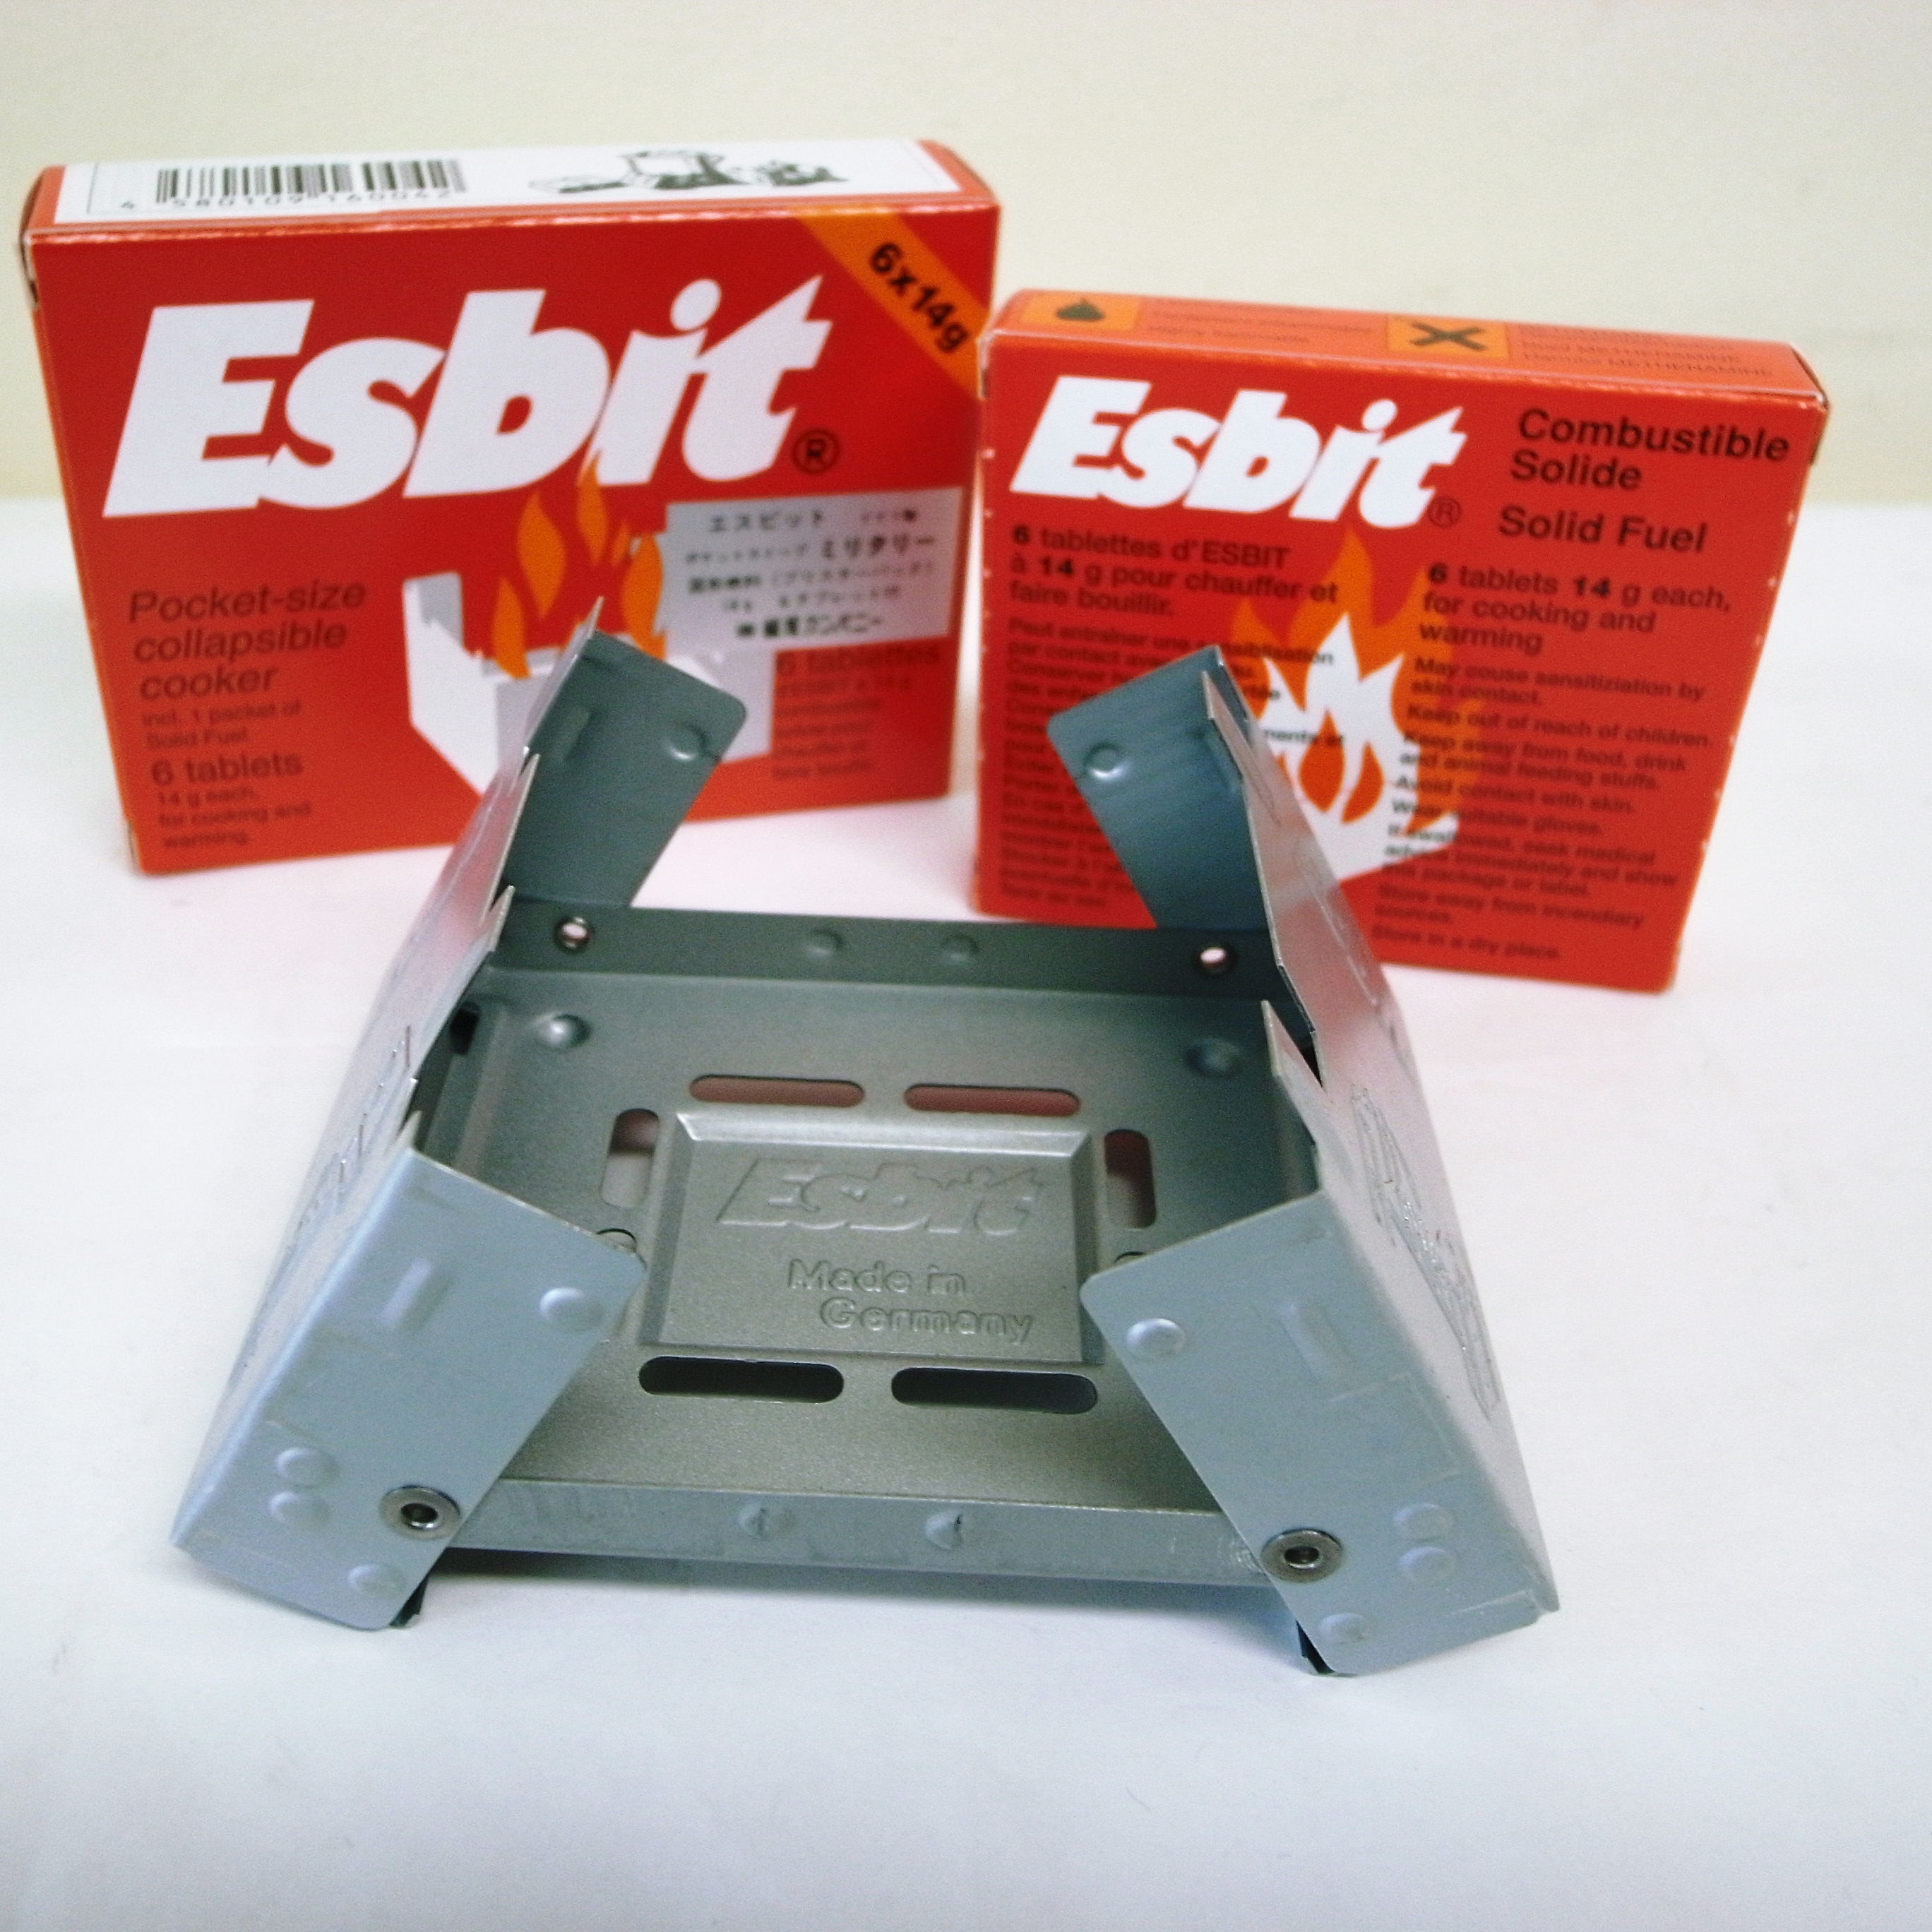 エスビット Esbit ポケットストーブ 固形燃料タブレット スター 